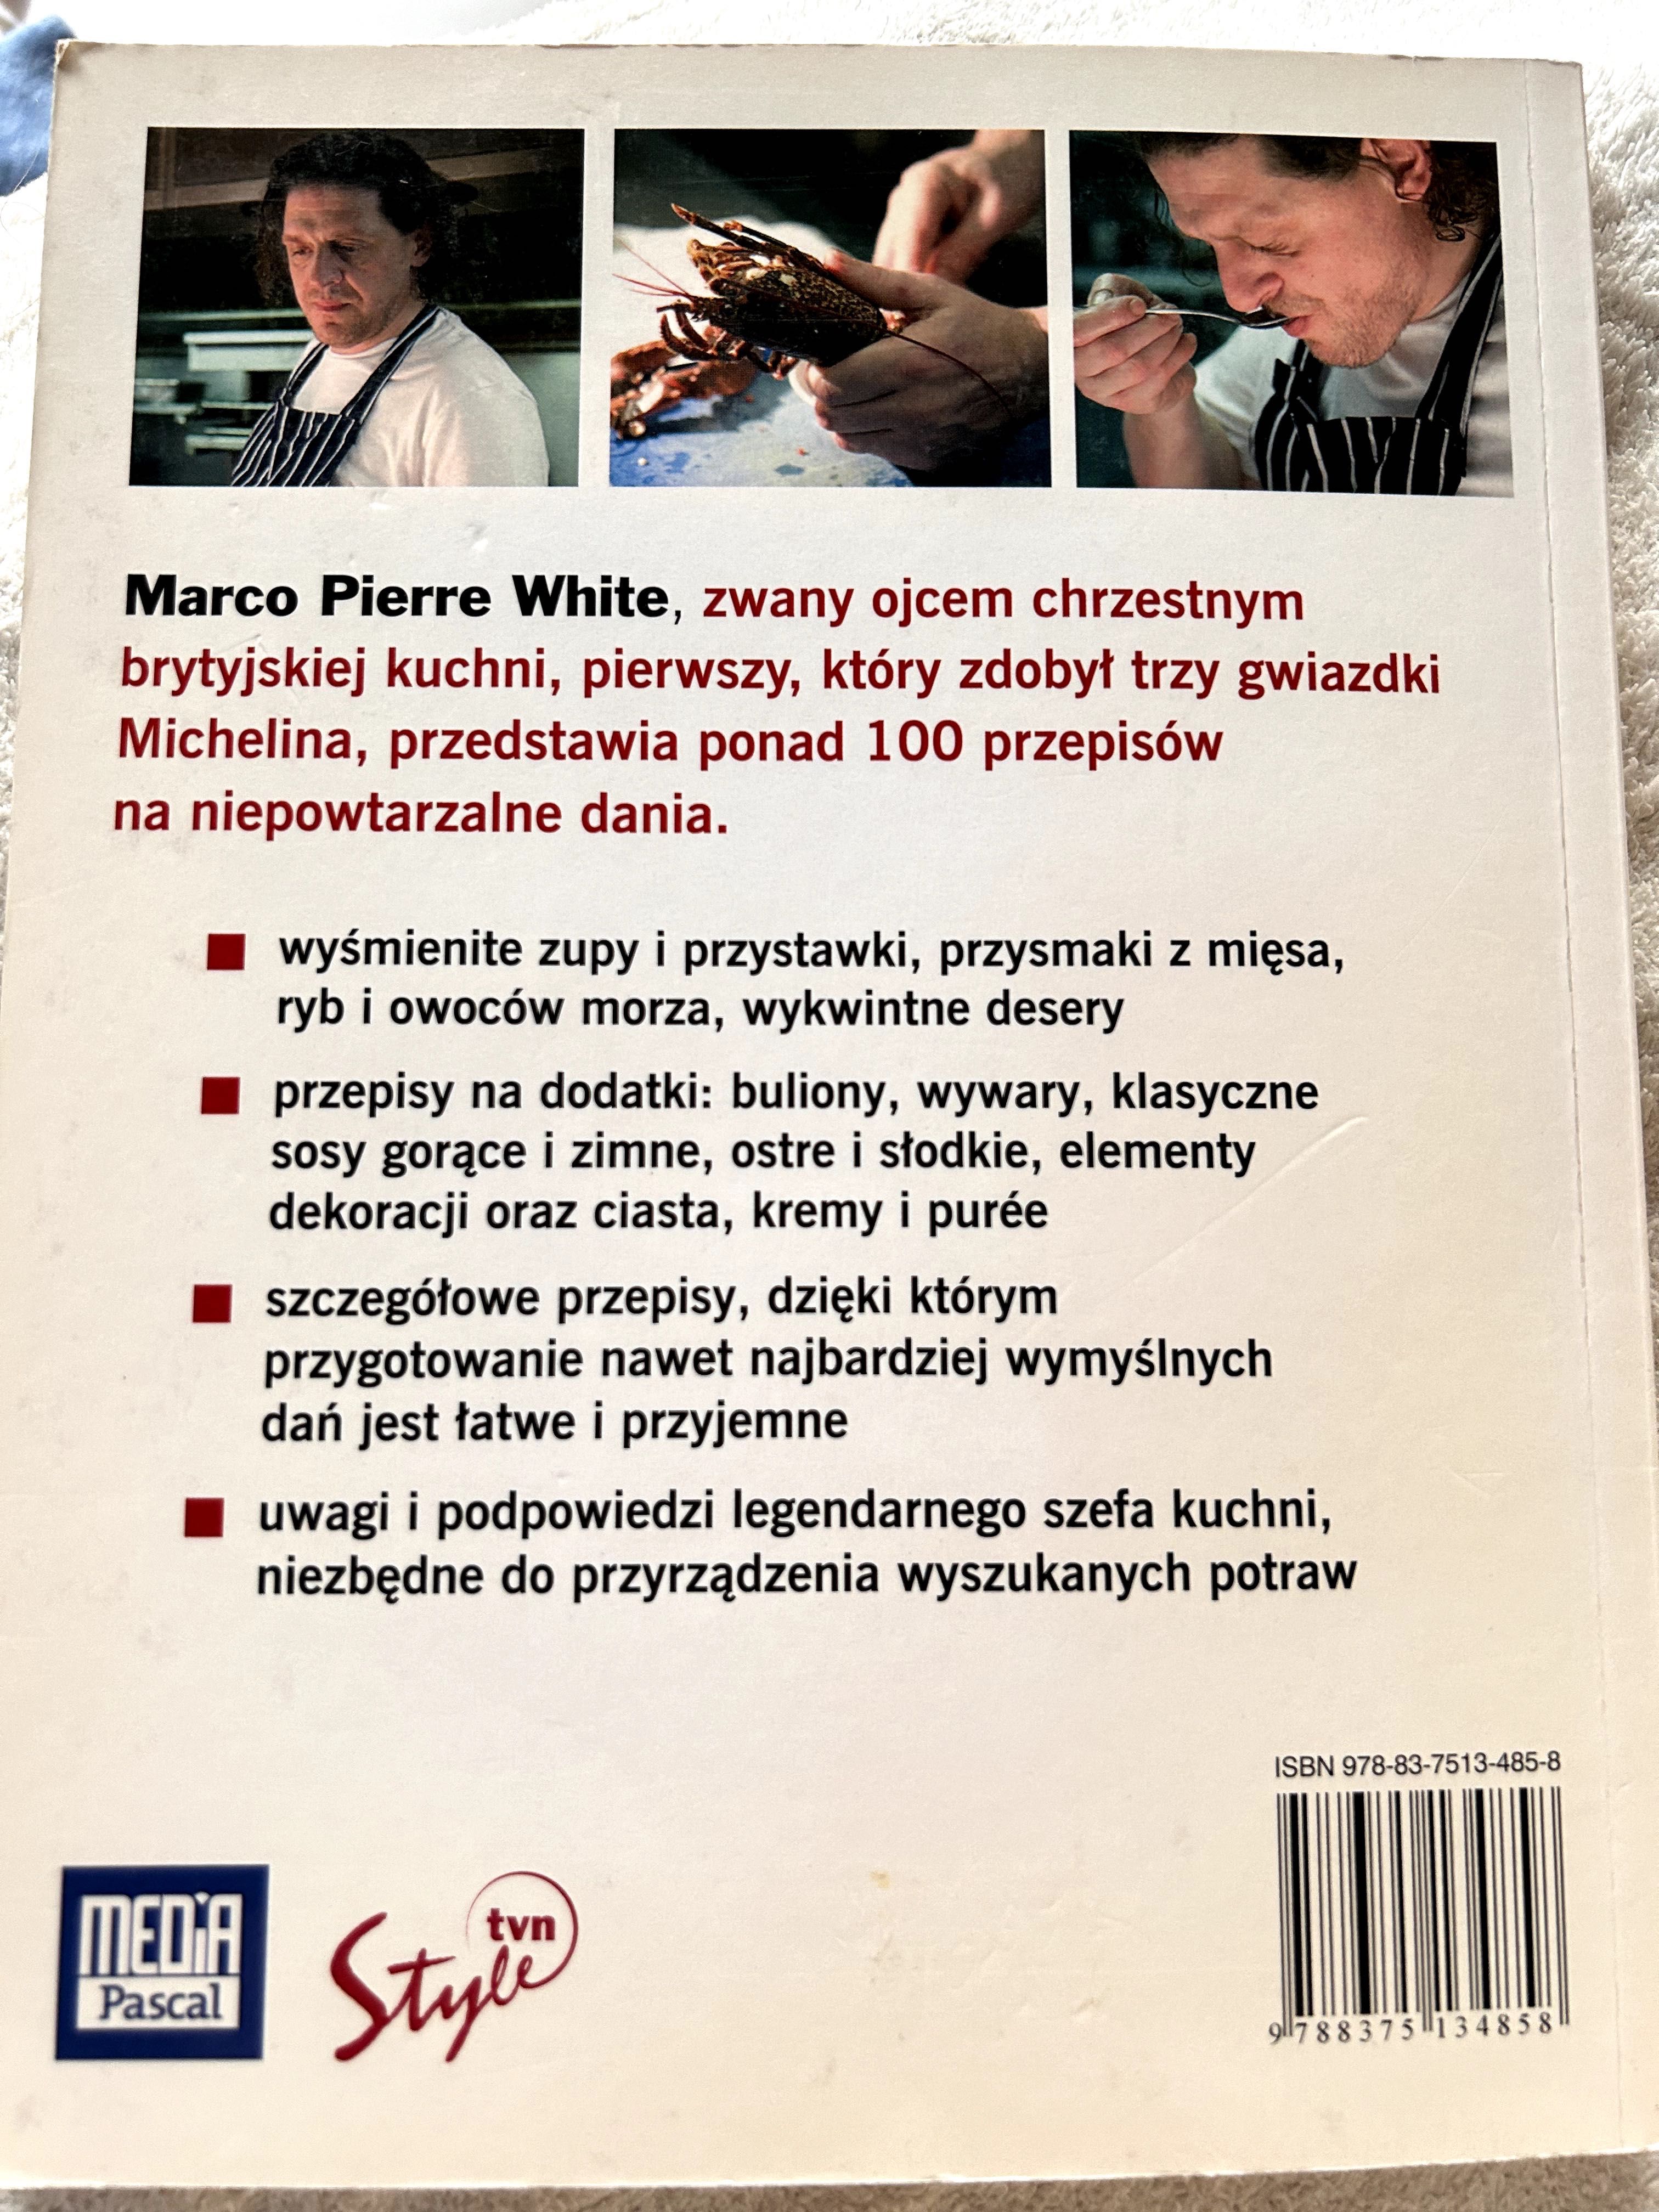 Marco Pierrea Whitea Piekielna kuchnia